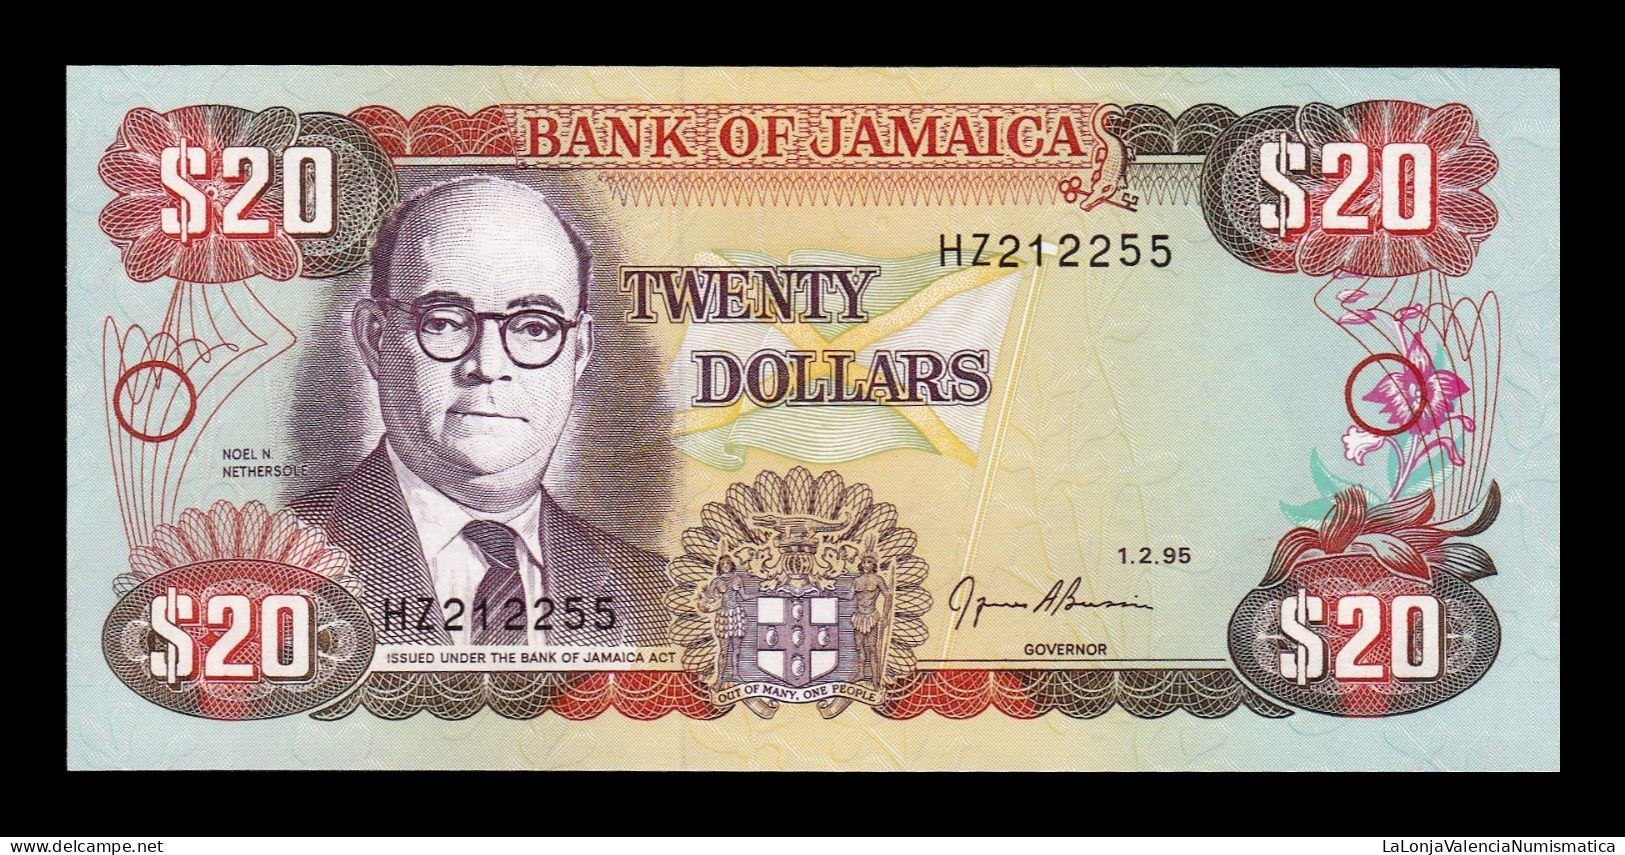 Jamaica 20 Dollars 1995 Pick 72e Sc Unc - Jamaica